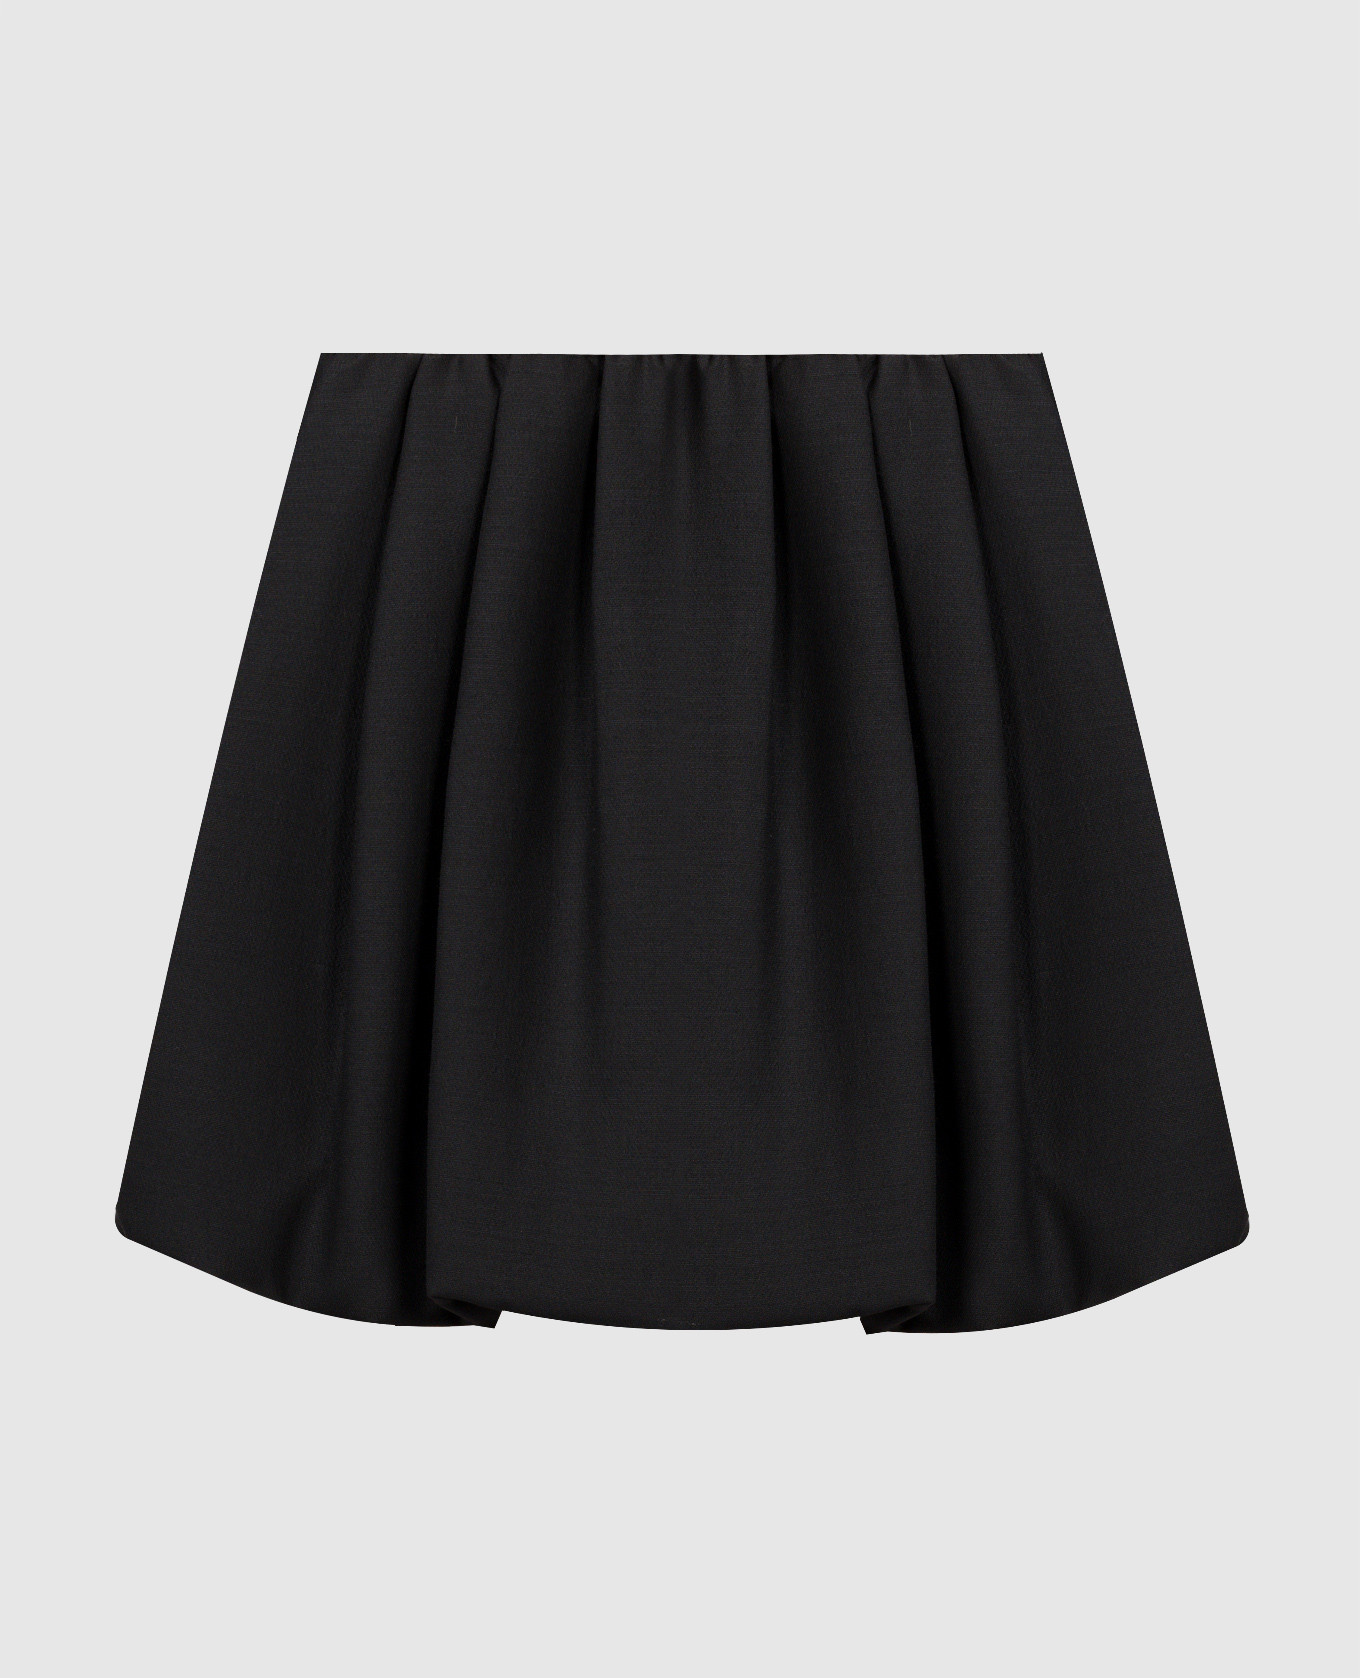 Черная юбка из шерсти и шелка с драпировкой.